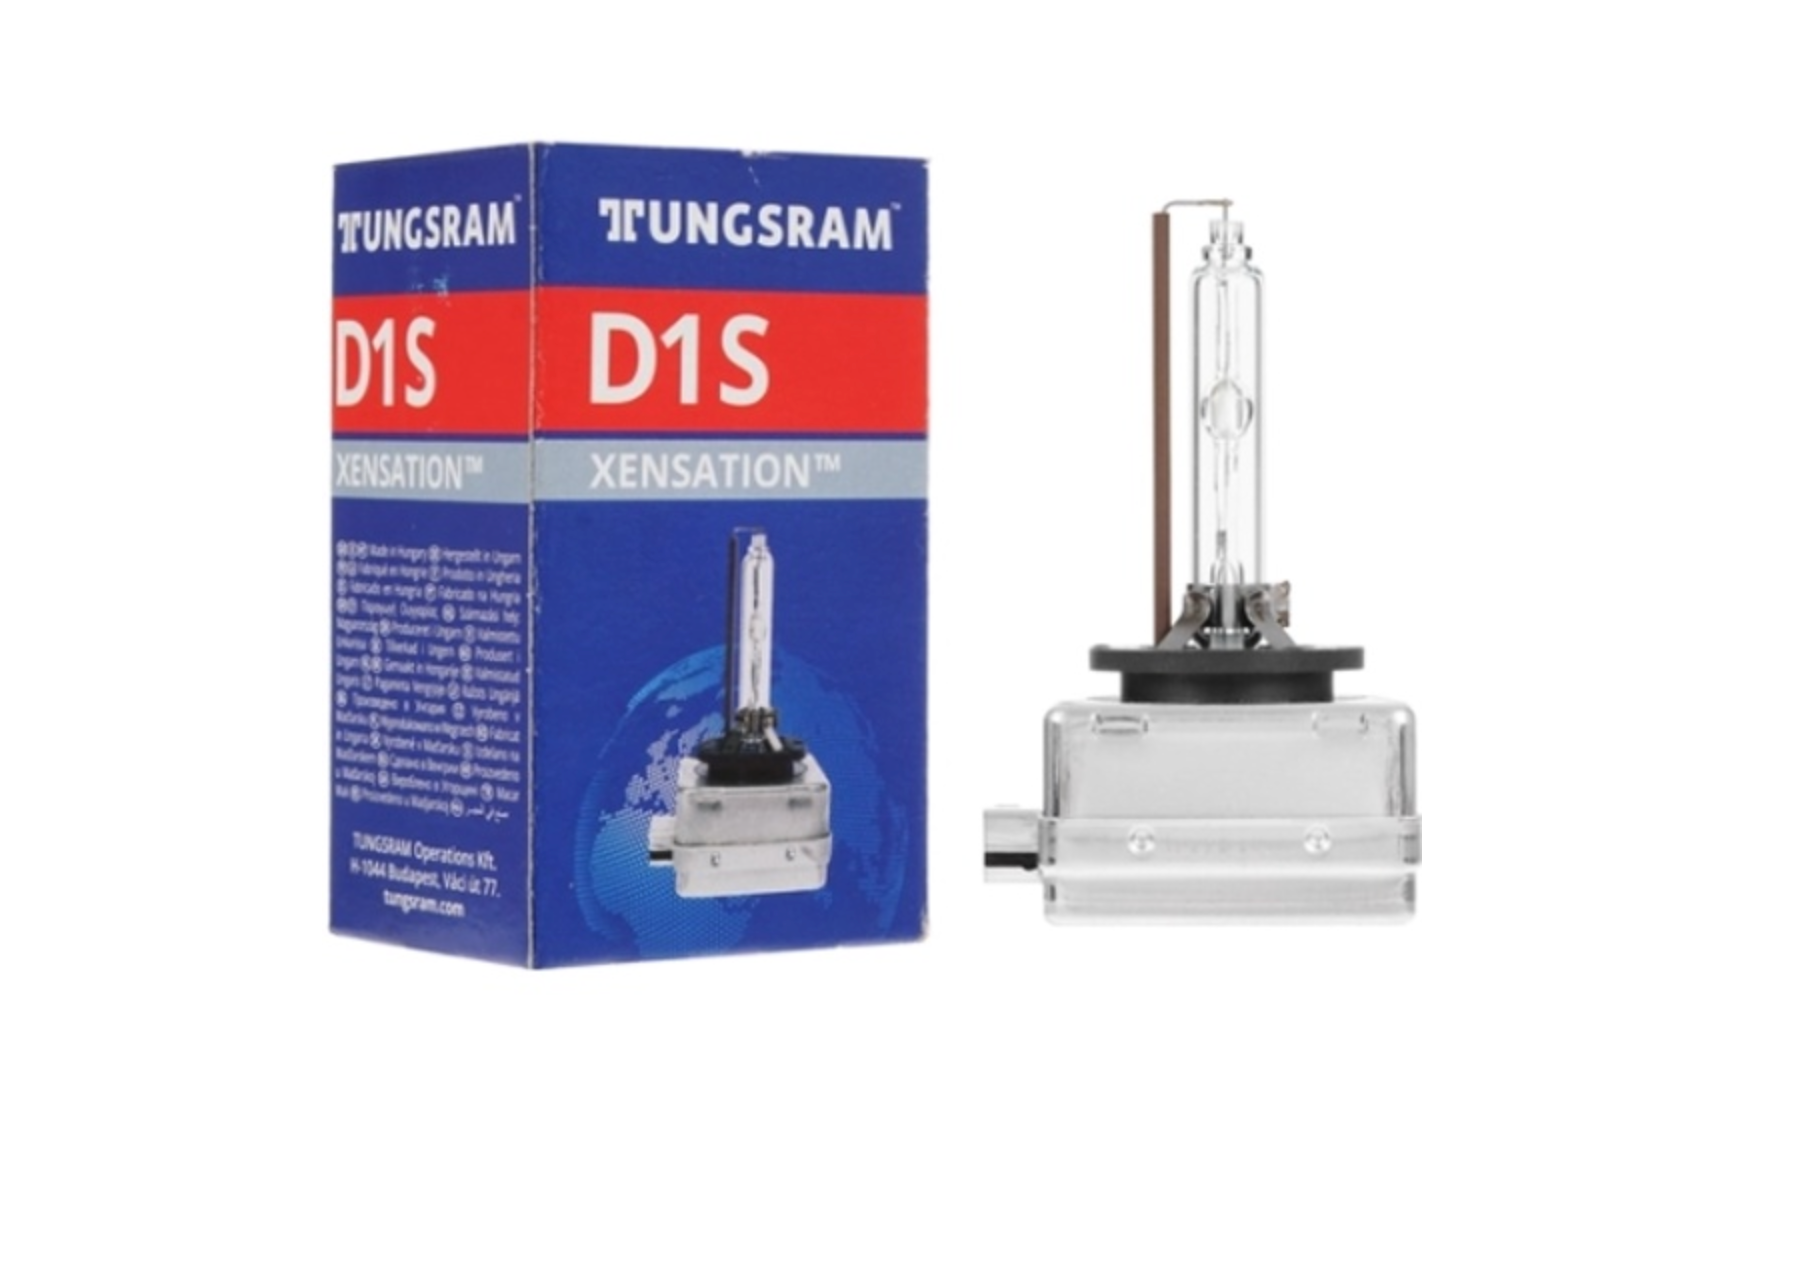 Tungsram 12v Лампа D1s  35w  1шт. 53620u  /Уп.1 Шт./ B1 TUNGSRAM арт. 53620U